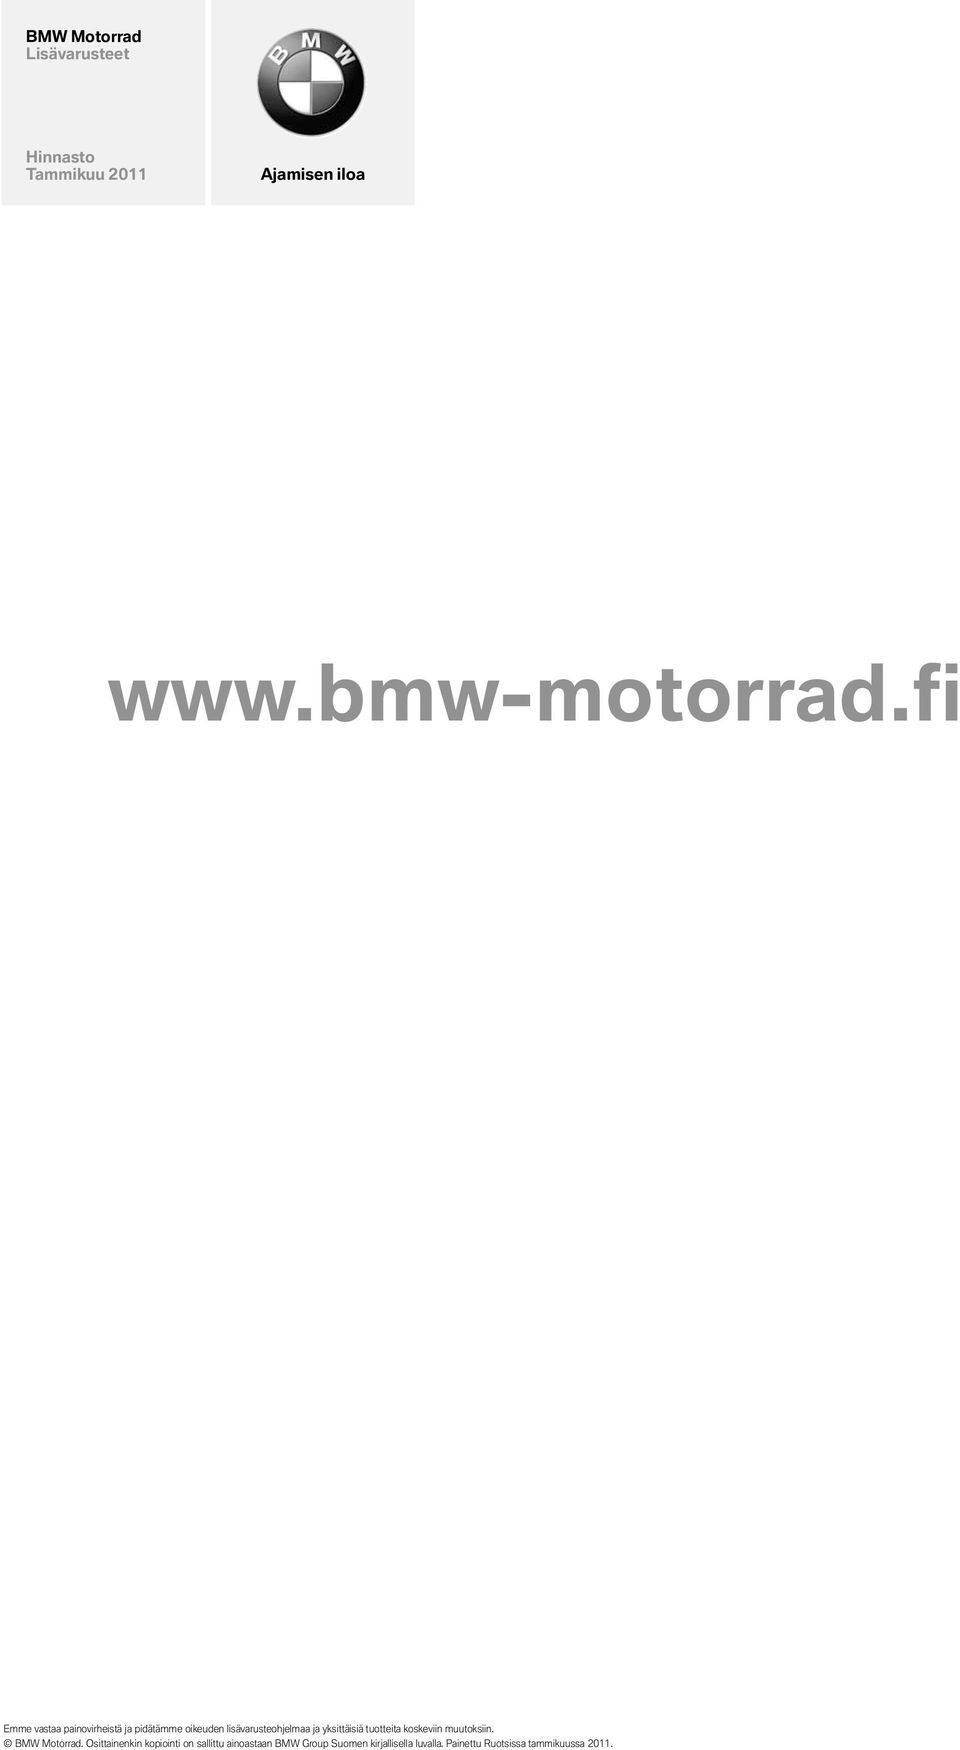 yksittäisiä tuotteita koskeviin muutoksiin. BMW Motorrad.